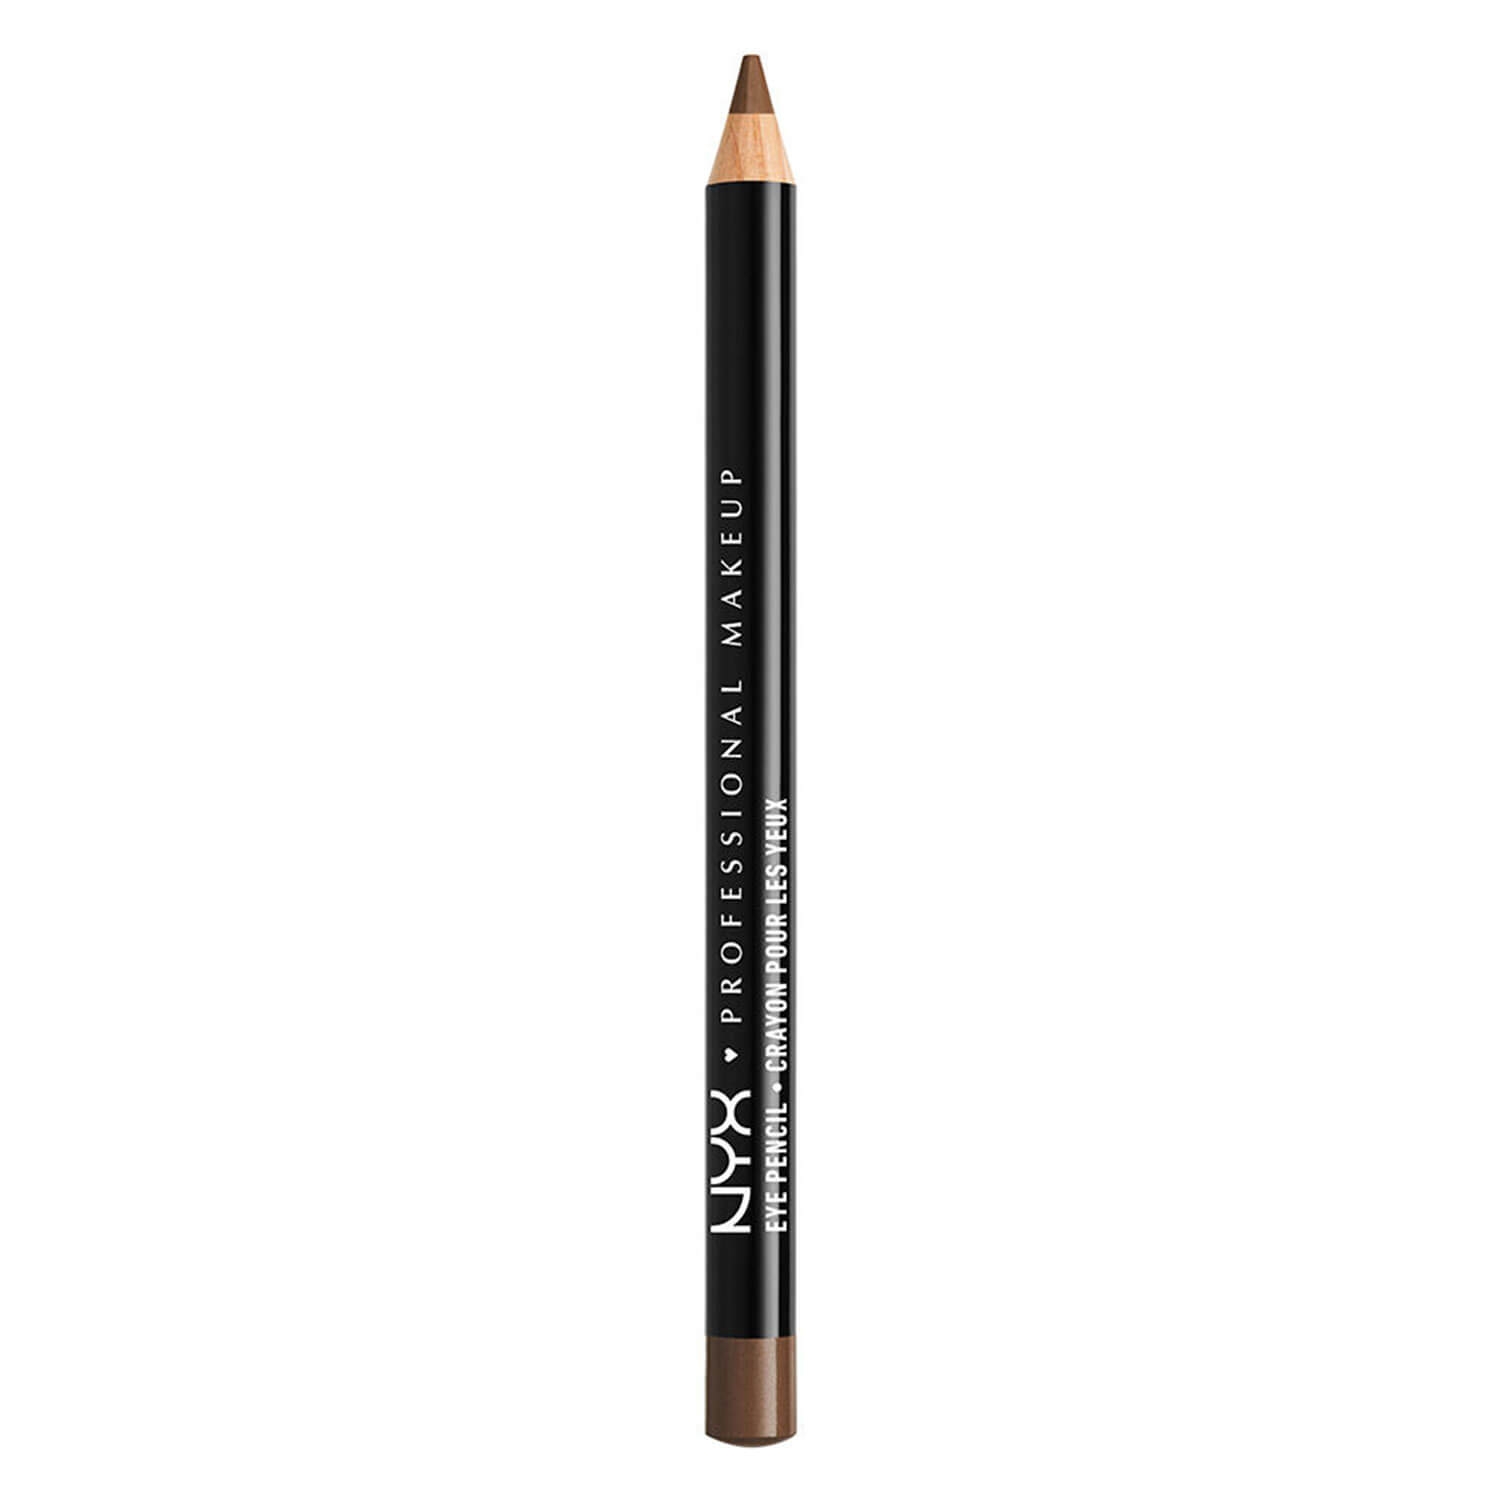 Produktbild von NYX Liner - Slim Eye Pencil Medium Brown